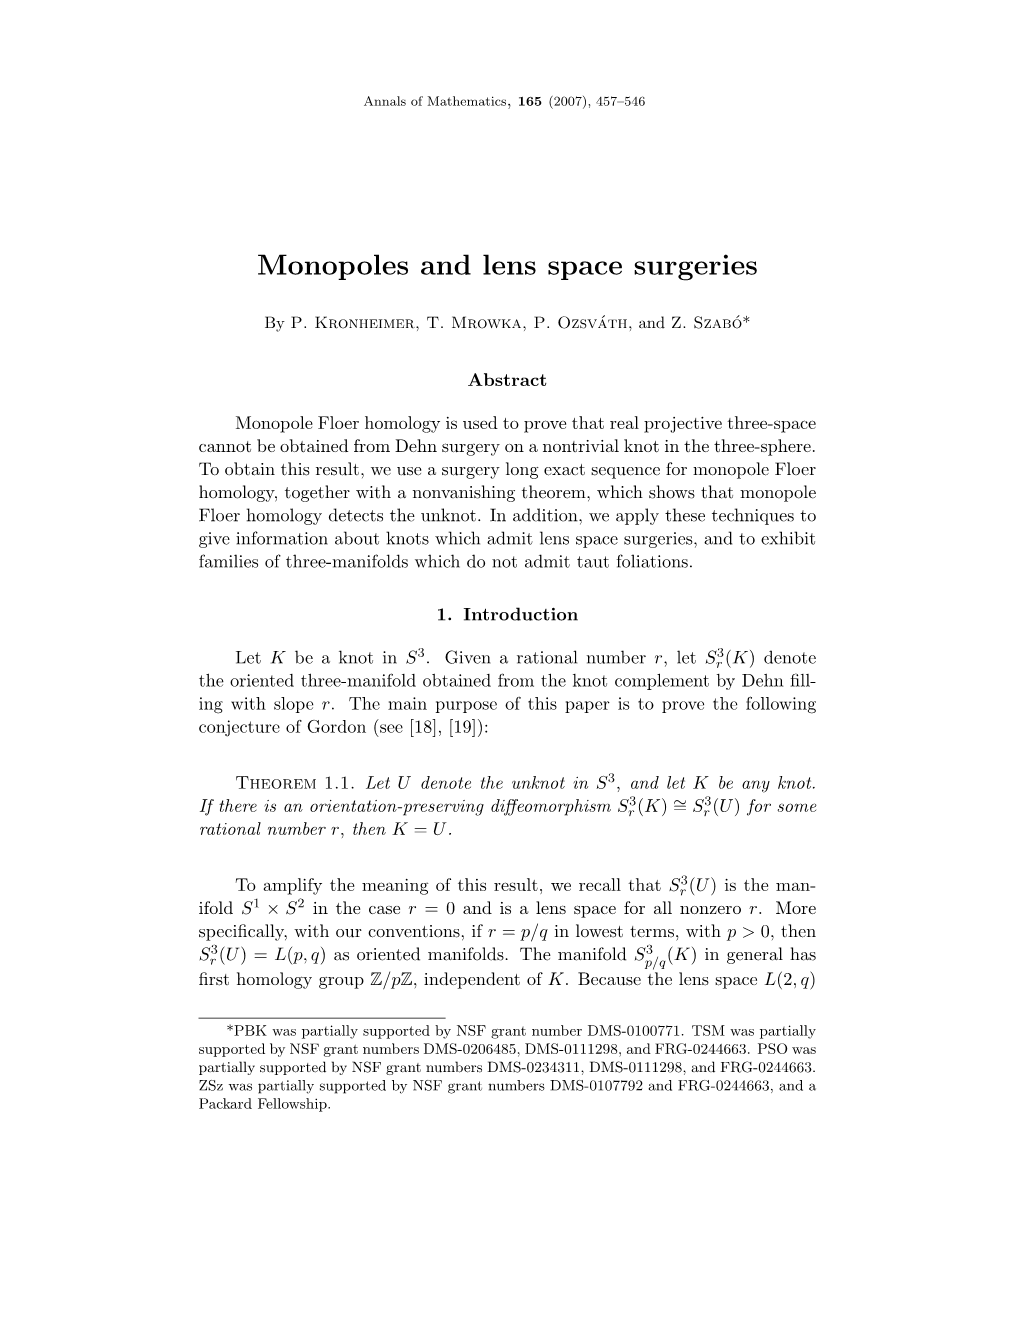 Monopoles and Lens Space Surgeries